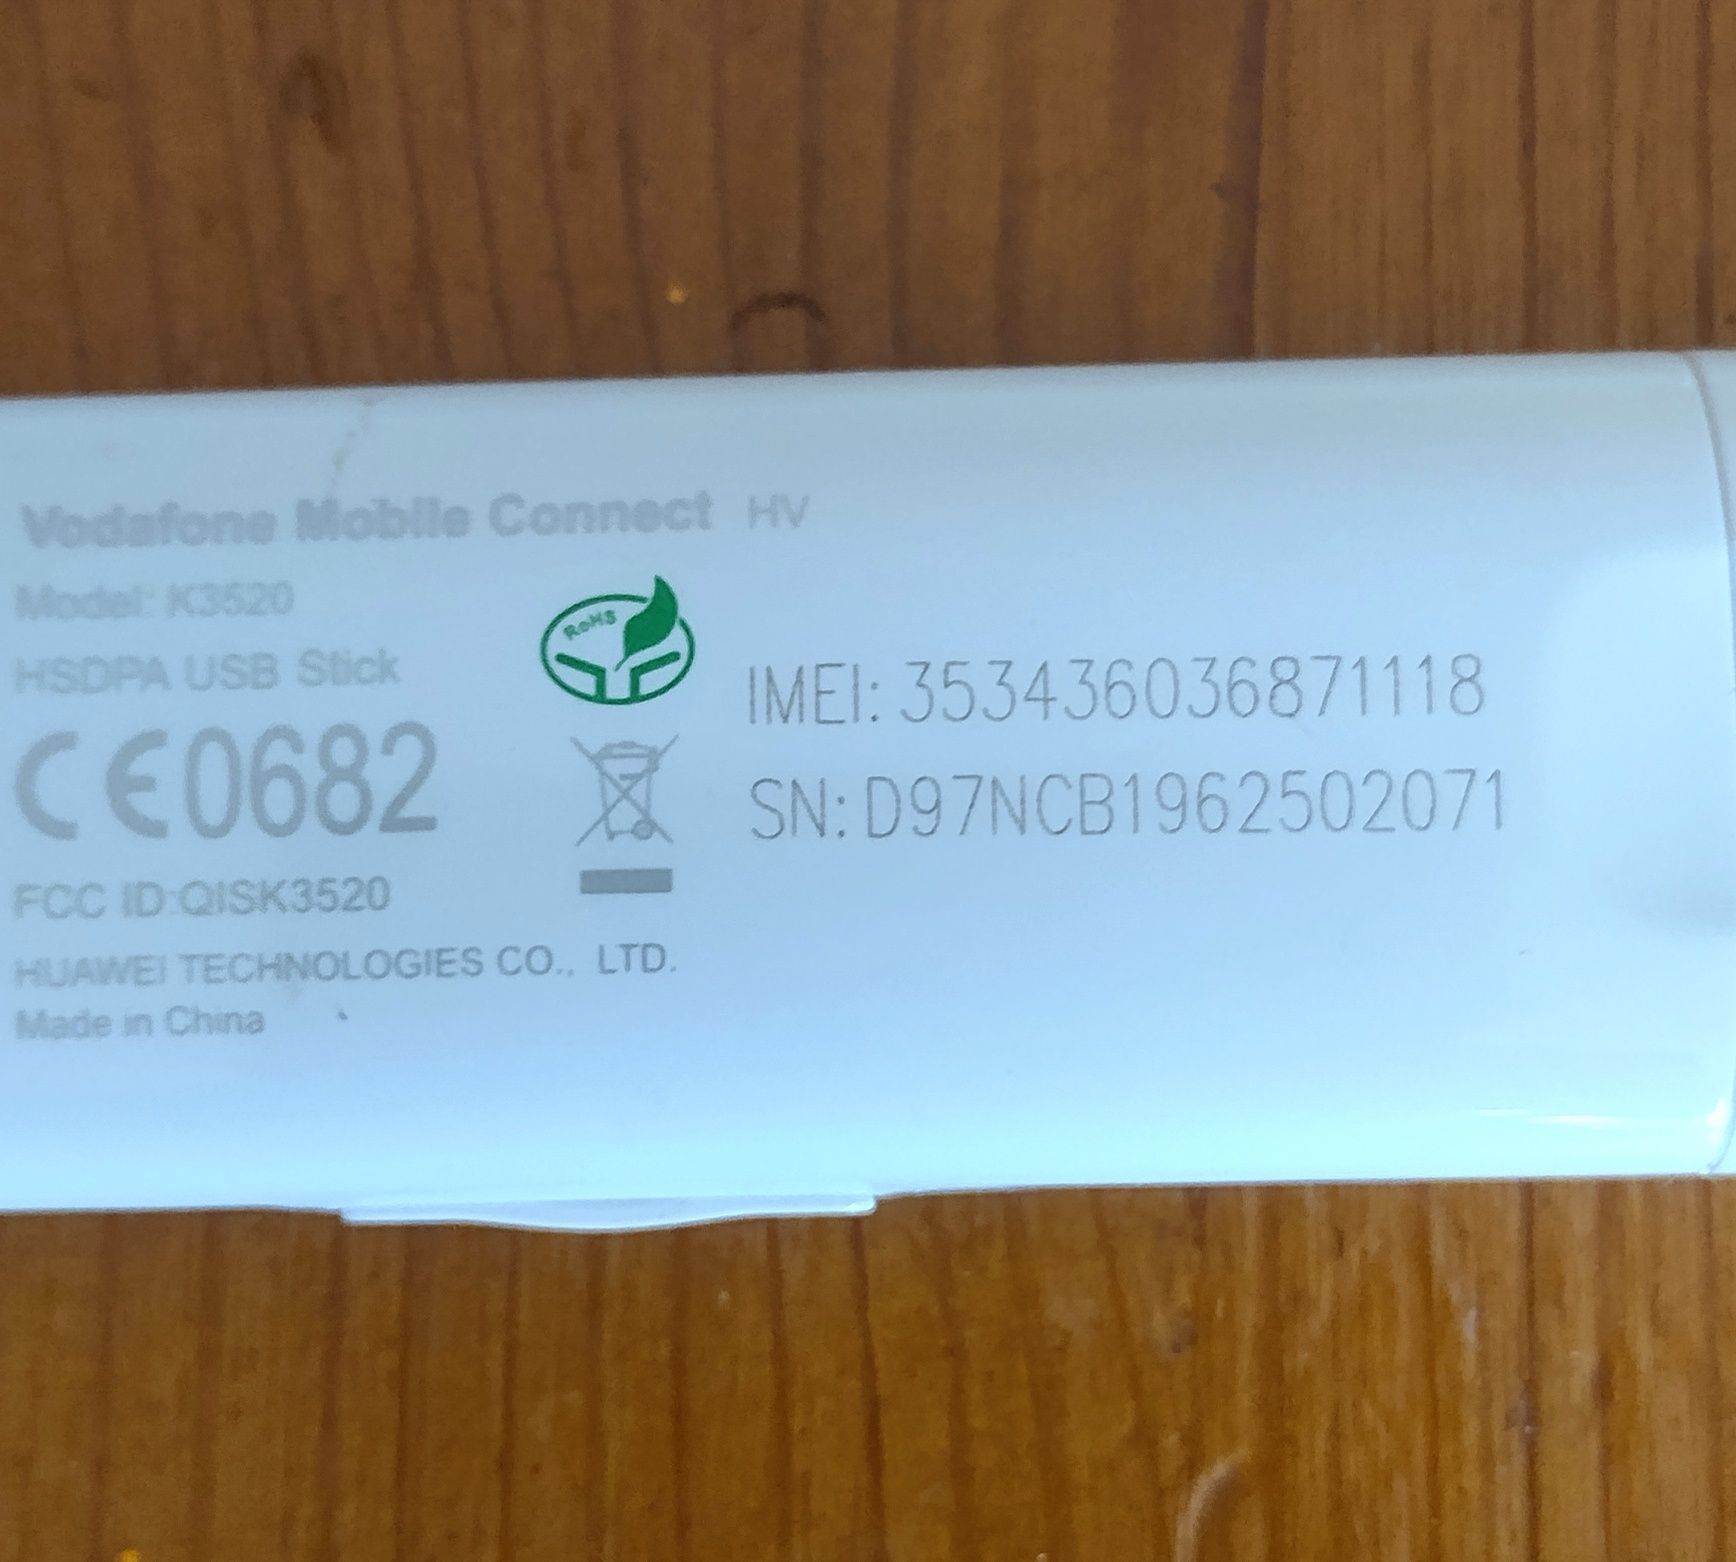 Modem USB Huawei K3520